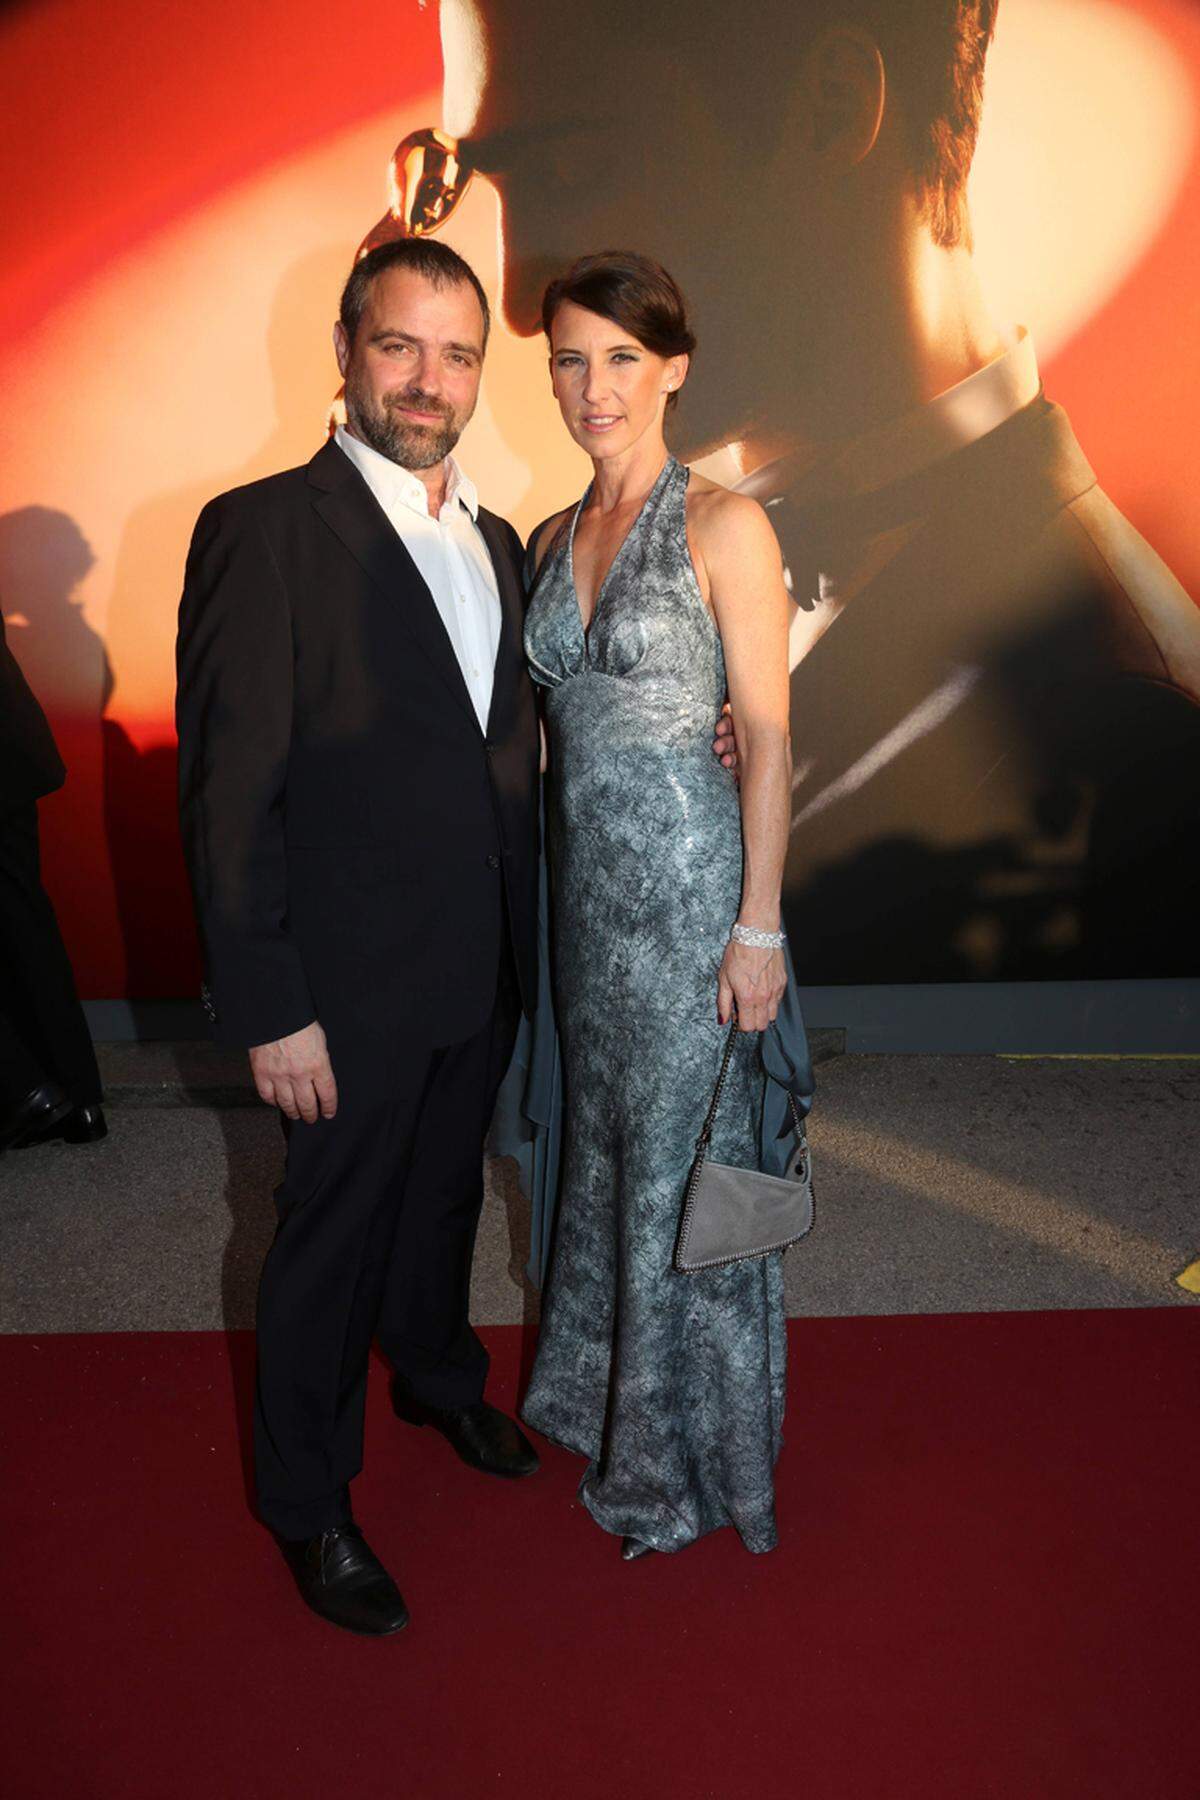 Als Paar outeten sich Jürgen Maurer und Maria Köstlinger, die ein Kleid von Maurizio Giambra trug.